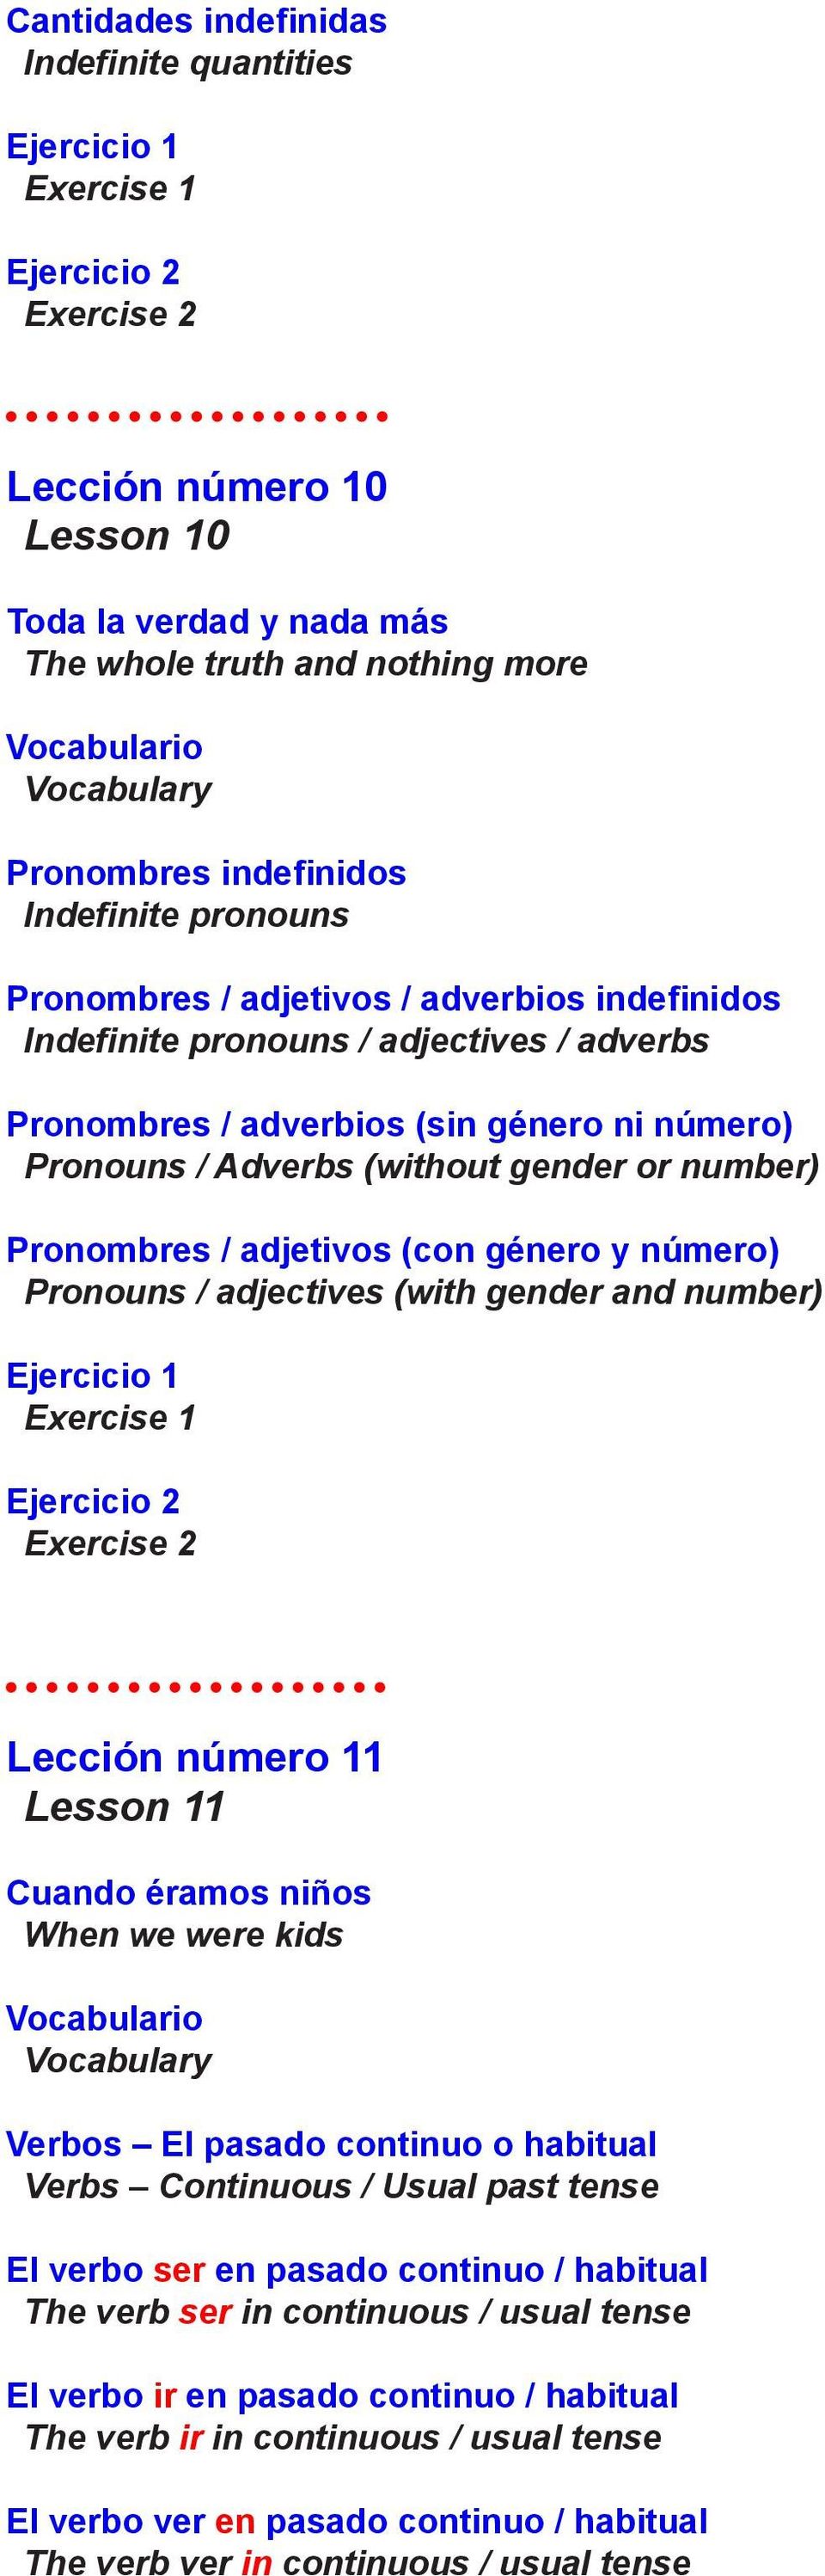 número) Pronouns / adjectives (with gender and number) Lección número 11 Lesson 11 Cuando éramos niños When we were kids Verbos El pasado continuo o habitual Verbs Continuous / Usual past tense El